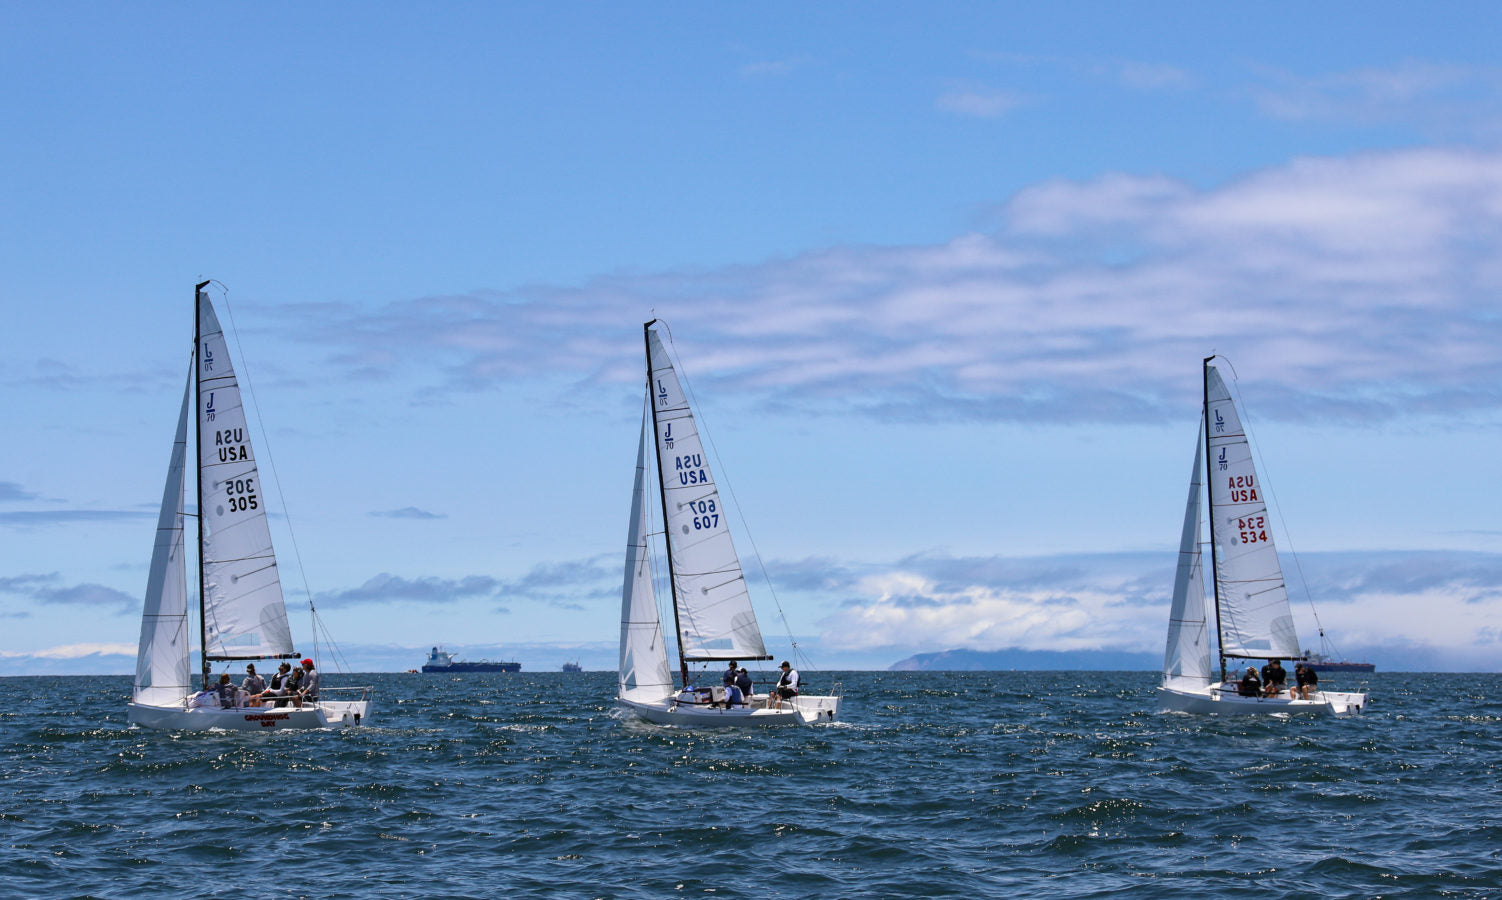 j70 upwind sail trim tips